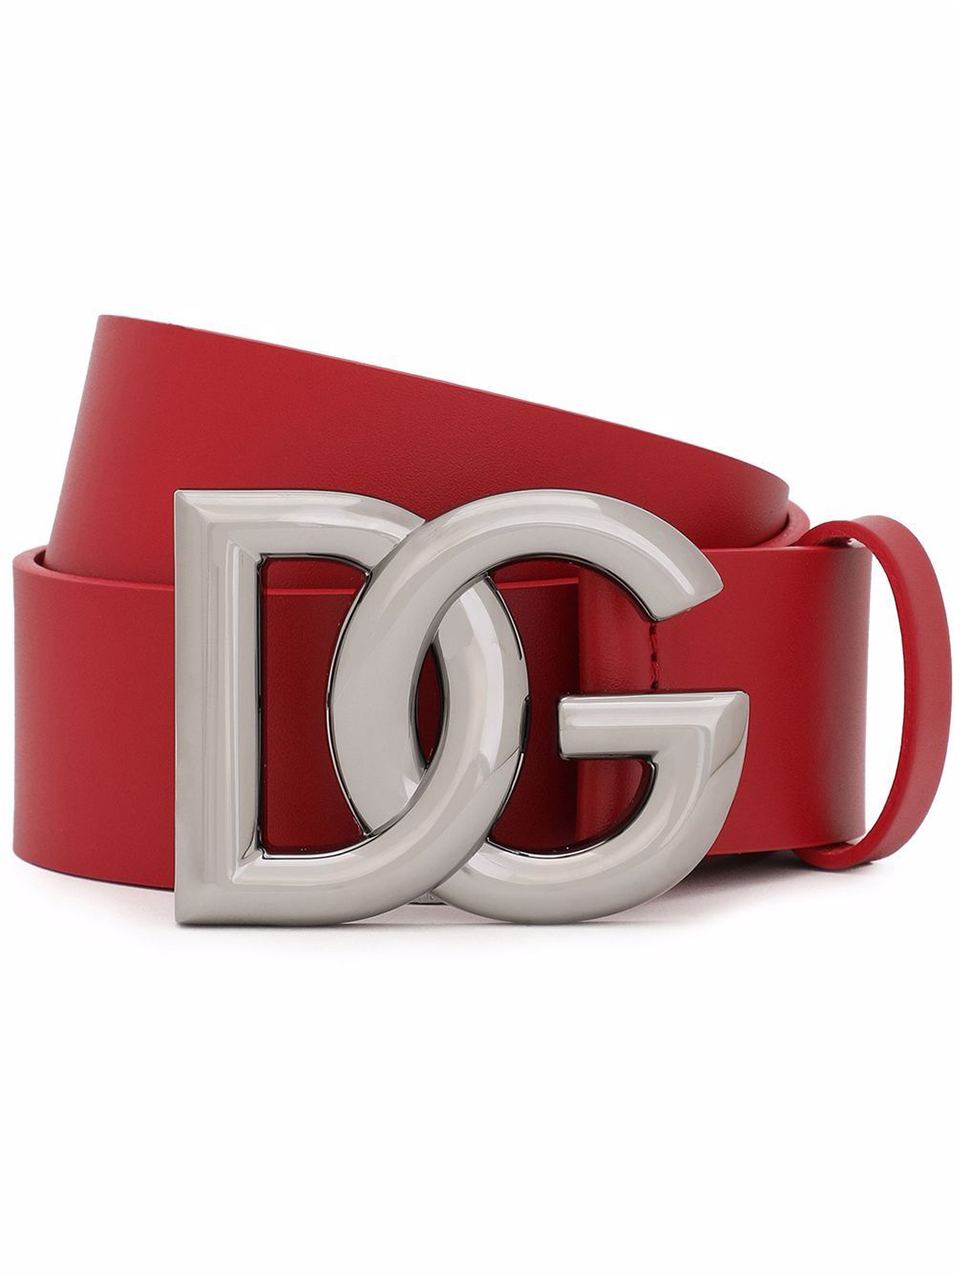 Imagem de: Cinto Dolce & Gabbana Vermelho Fivela com Logo DG